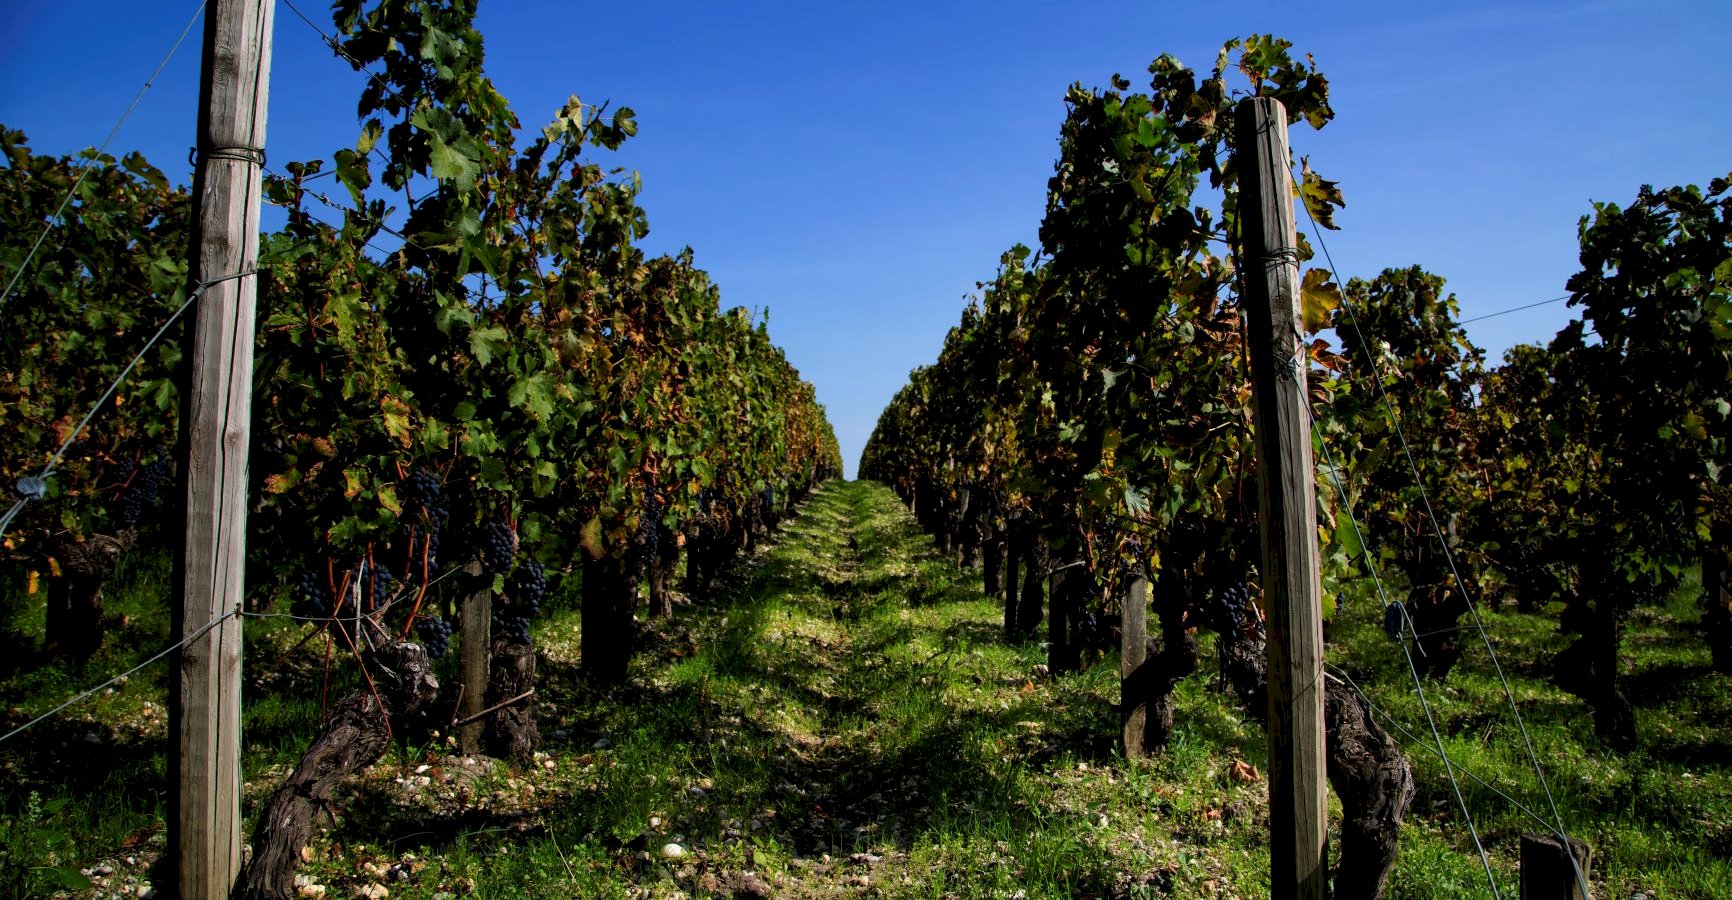 Ophorus Tours - Private Bordeaux Wine Tour to Medoc, St Emilion & Graves Vineyards